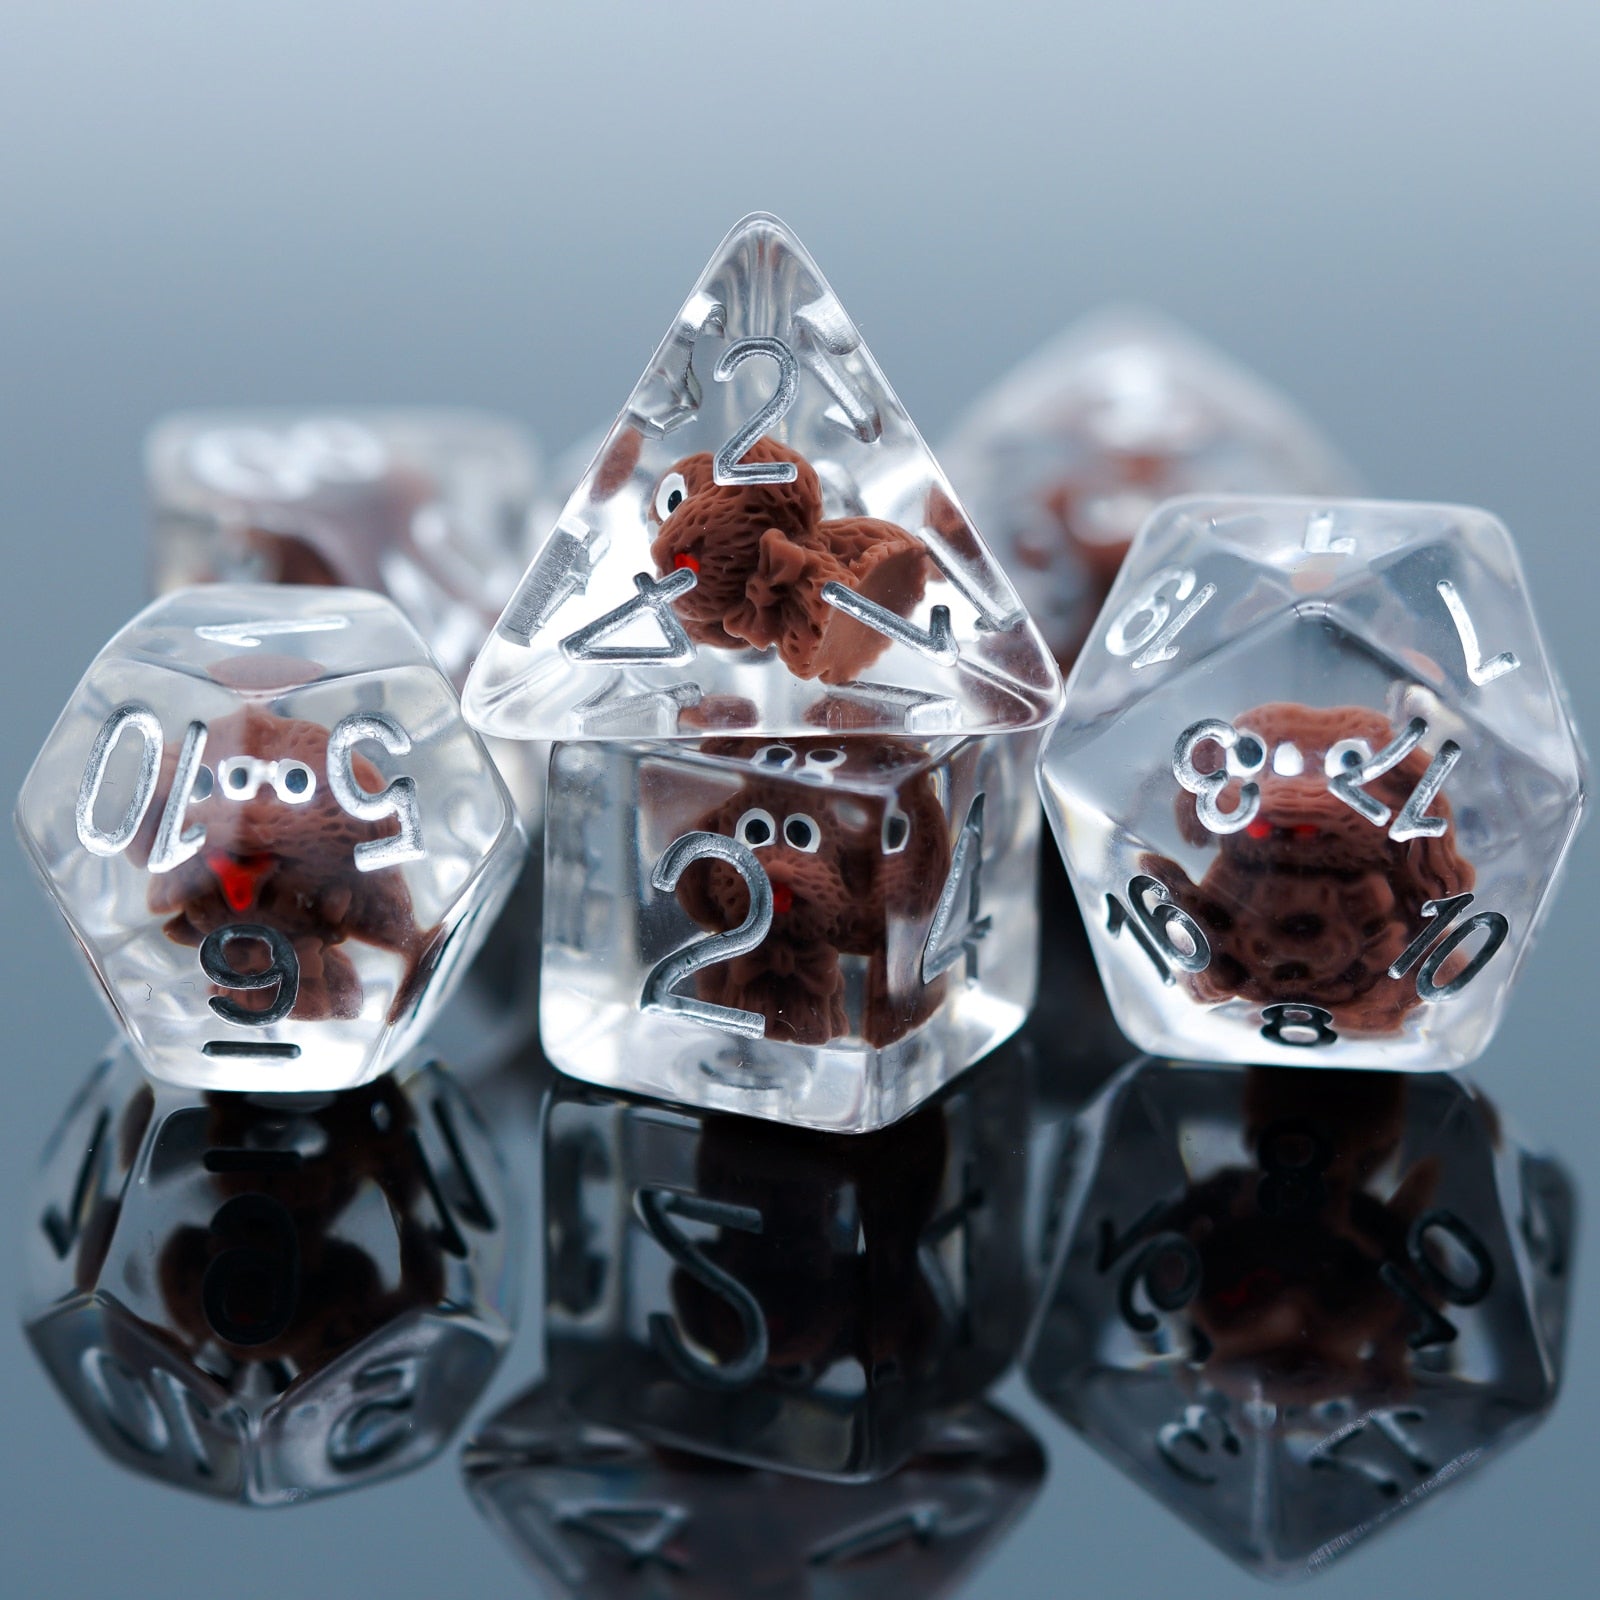 7 piece transparent plastic dice set, doggo in middle